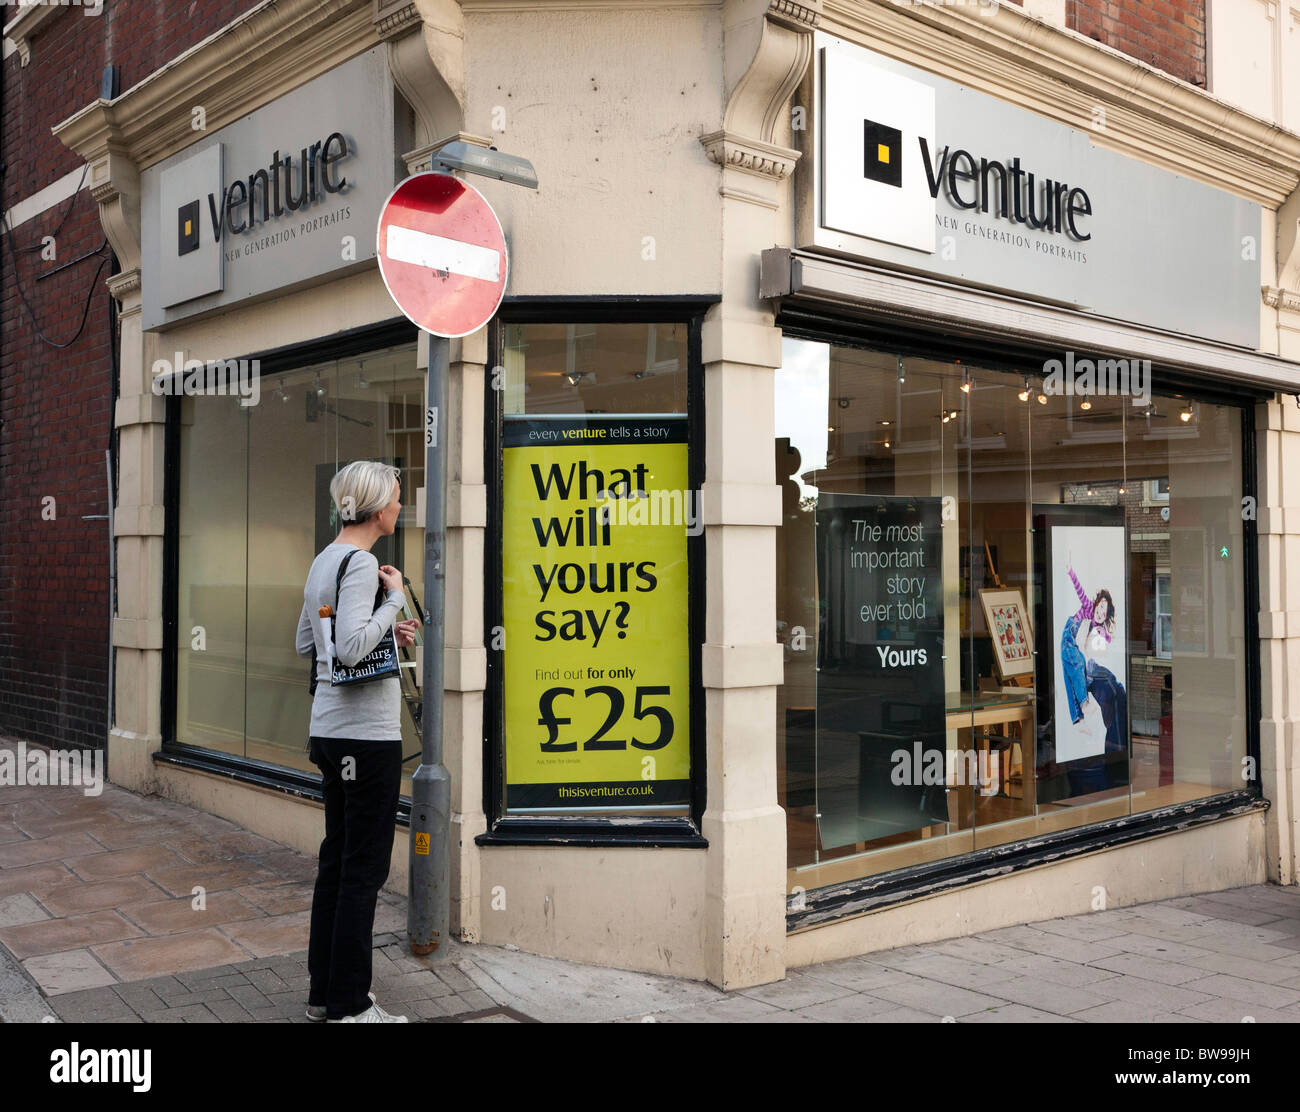 Venture photography studio Stock Photo